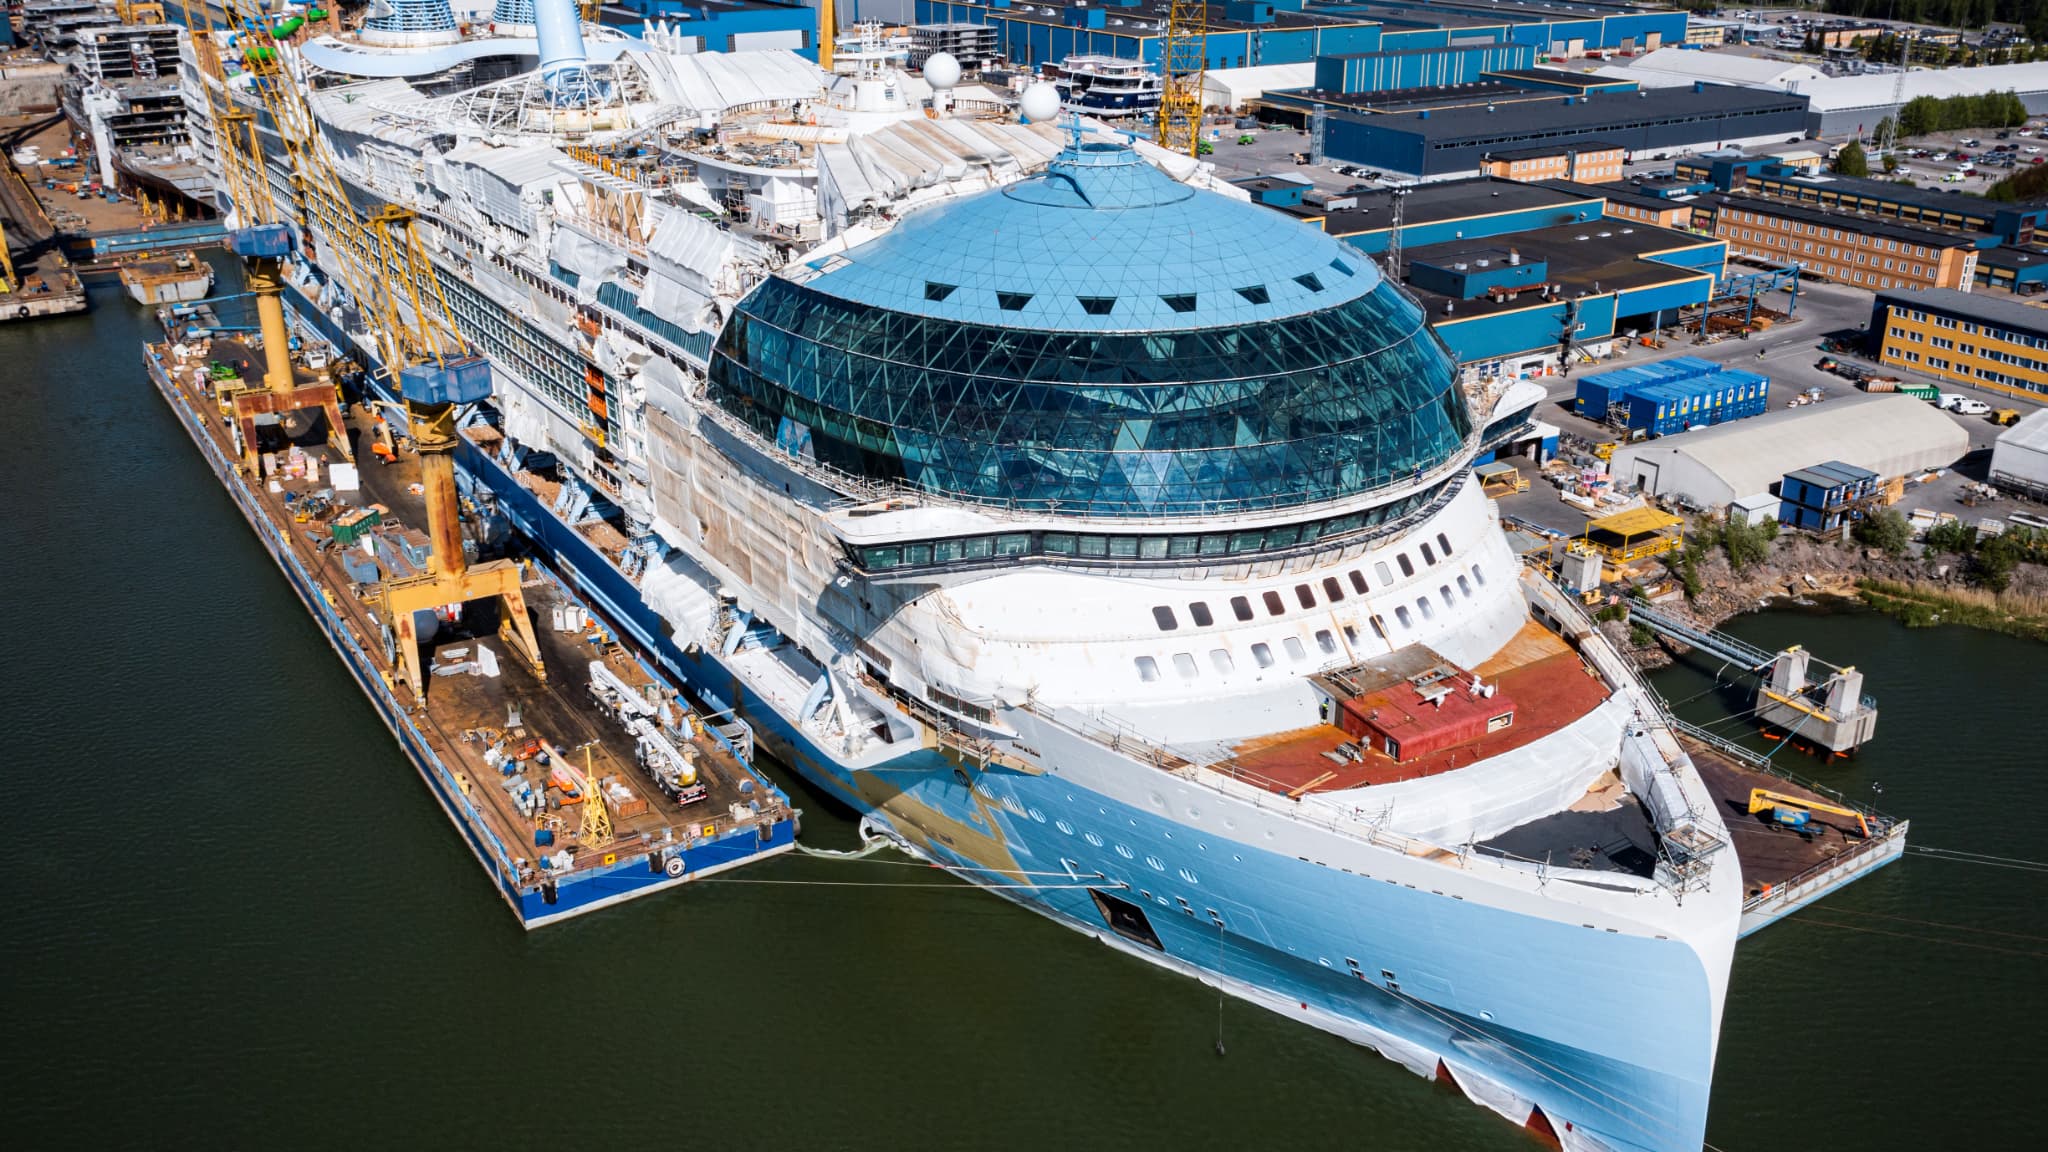 Après l'Icon of the Seas, la Royal Caribbean va construire deux autres